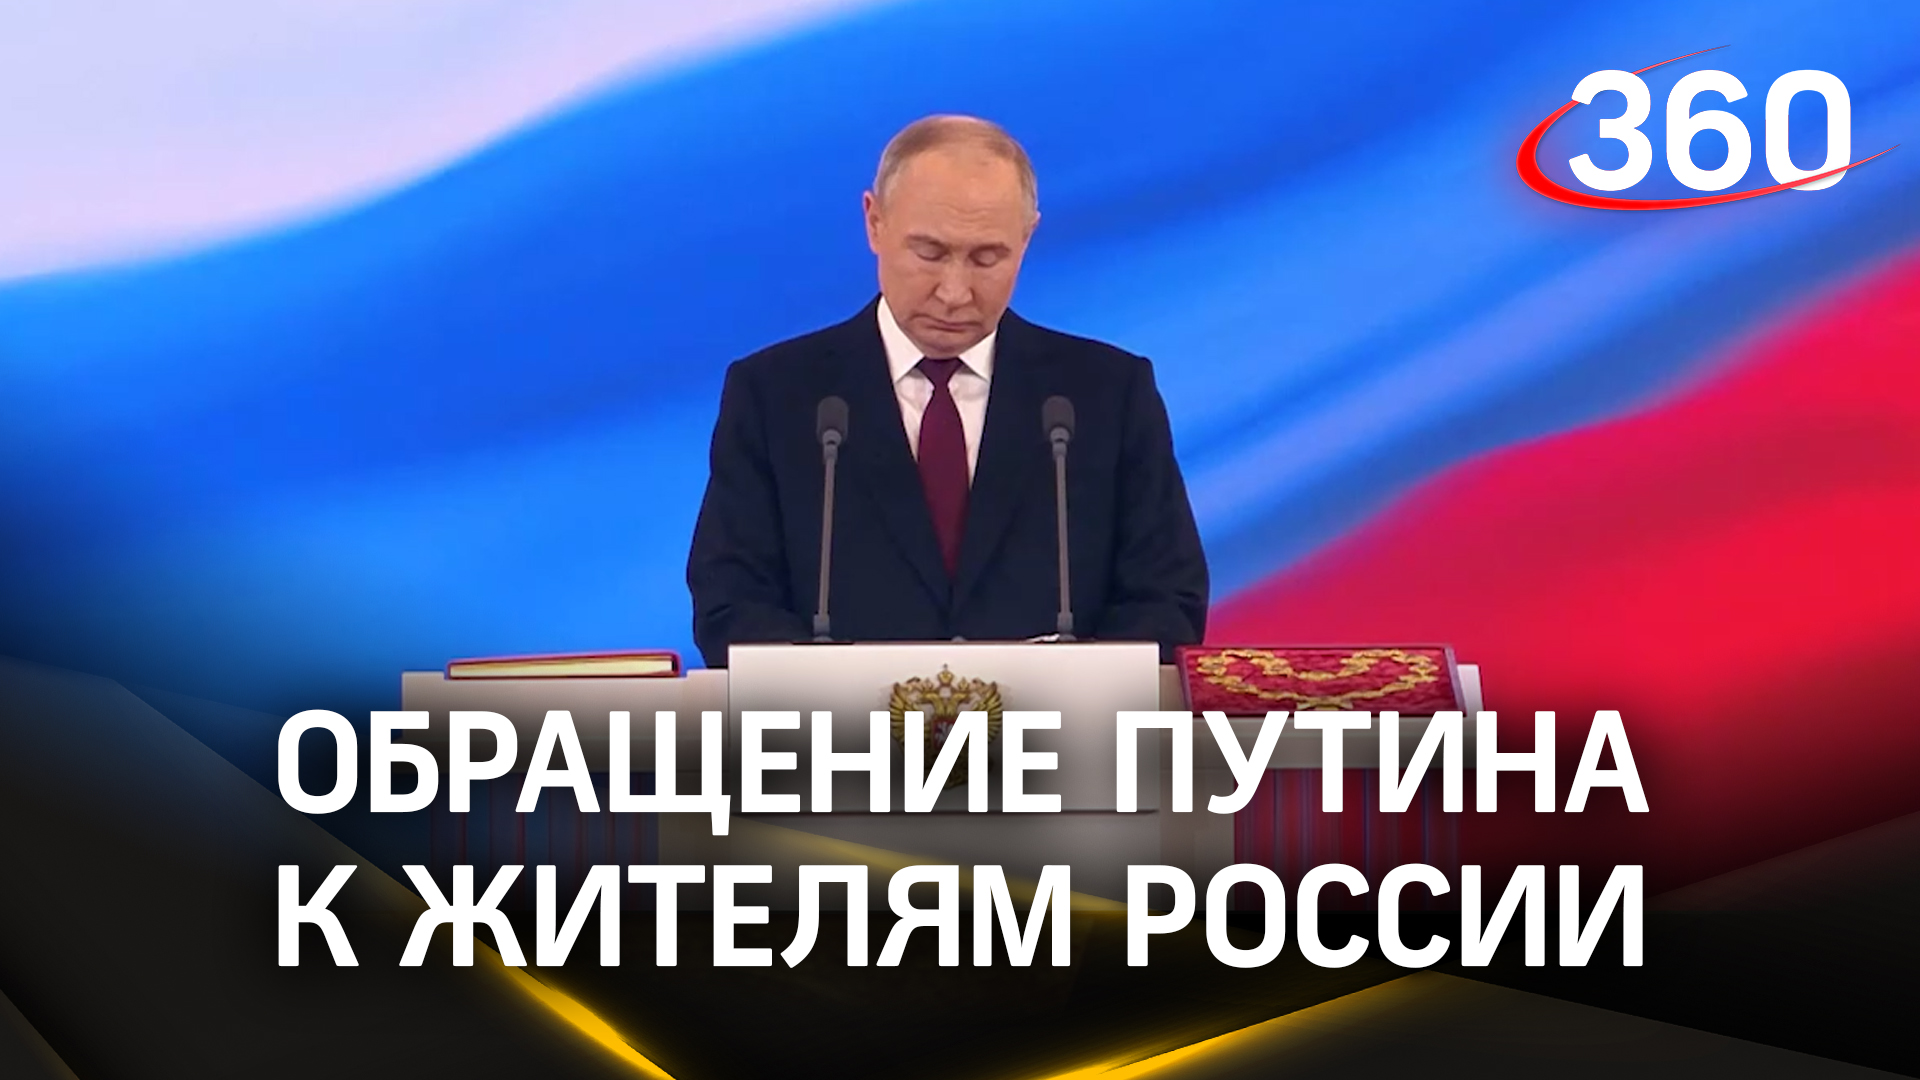 Полное видео обращения Владимира Путина к жителям России на инаугурации в Кремле